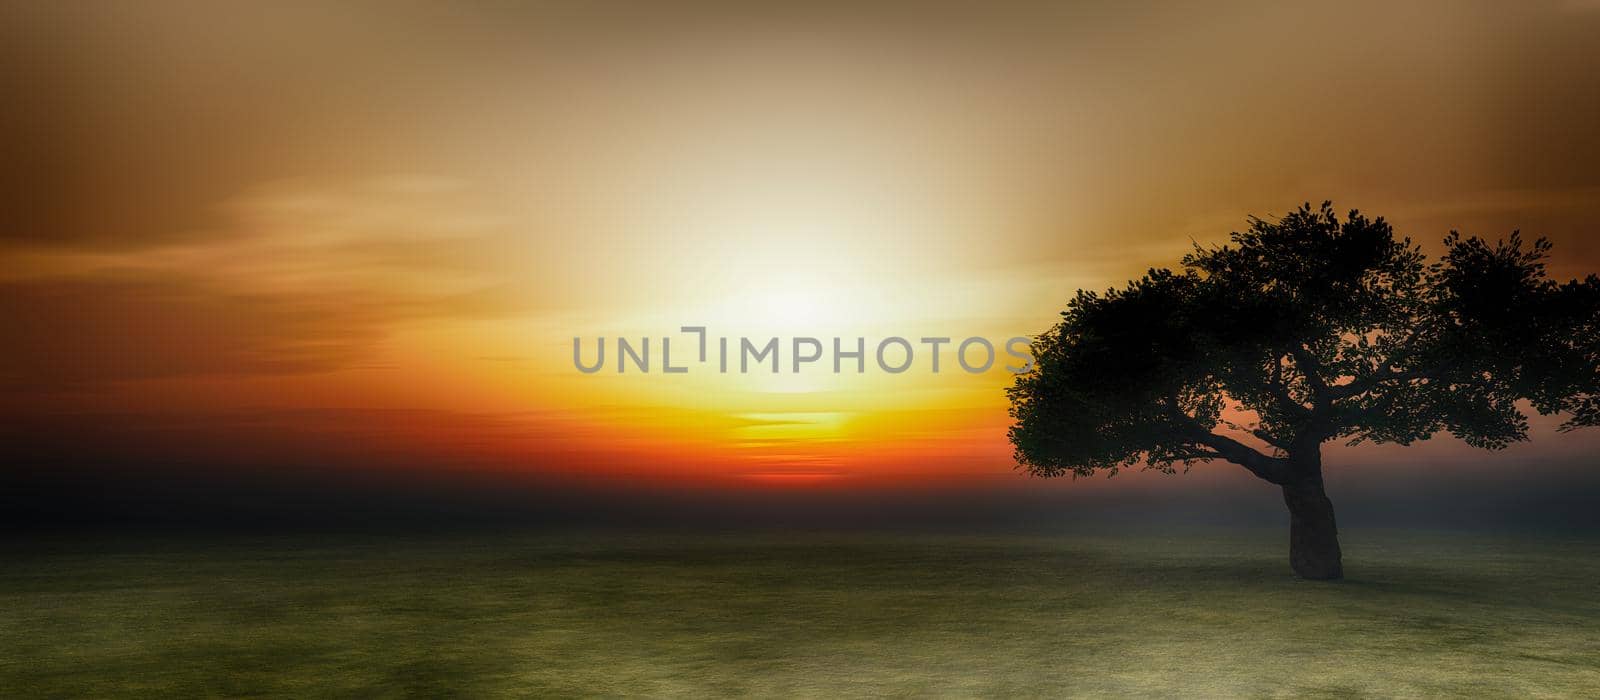 tree on field sunrise 3d render by alex_nako